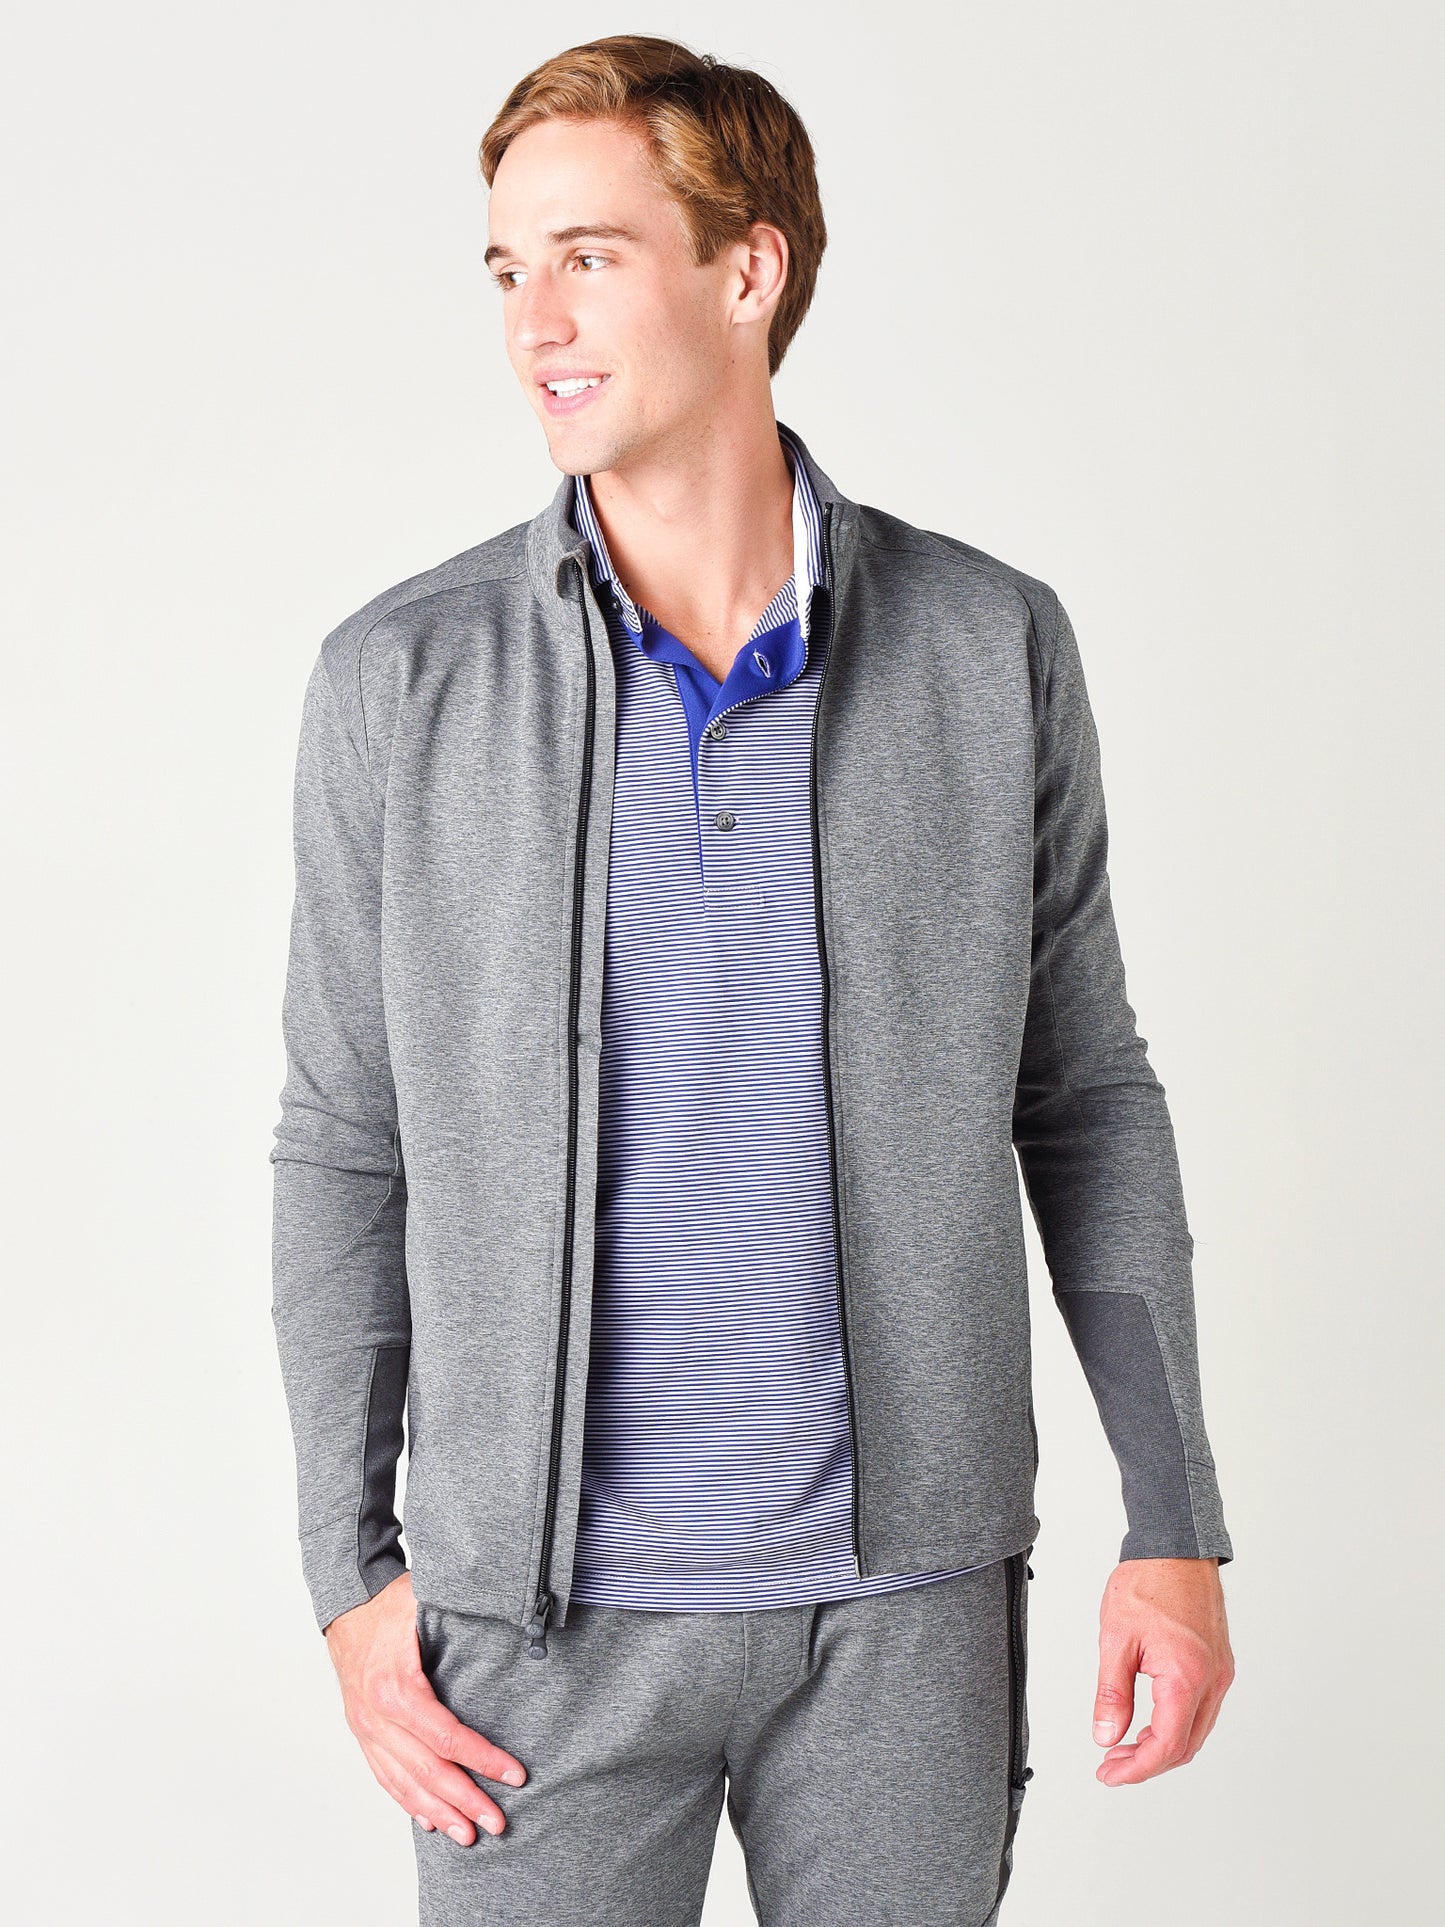 Greyson Men's Sequoia Full-Zip Jacket